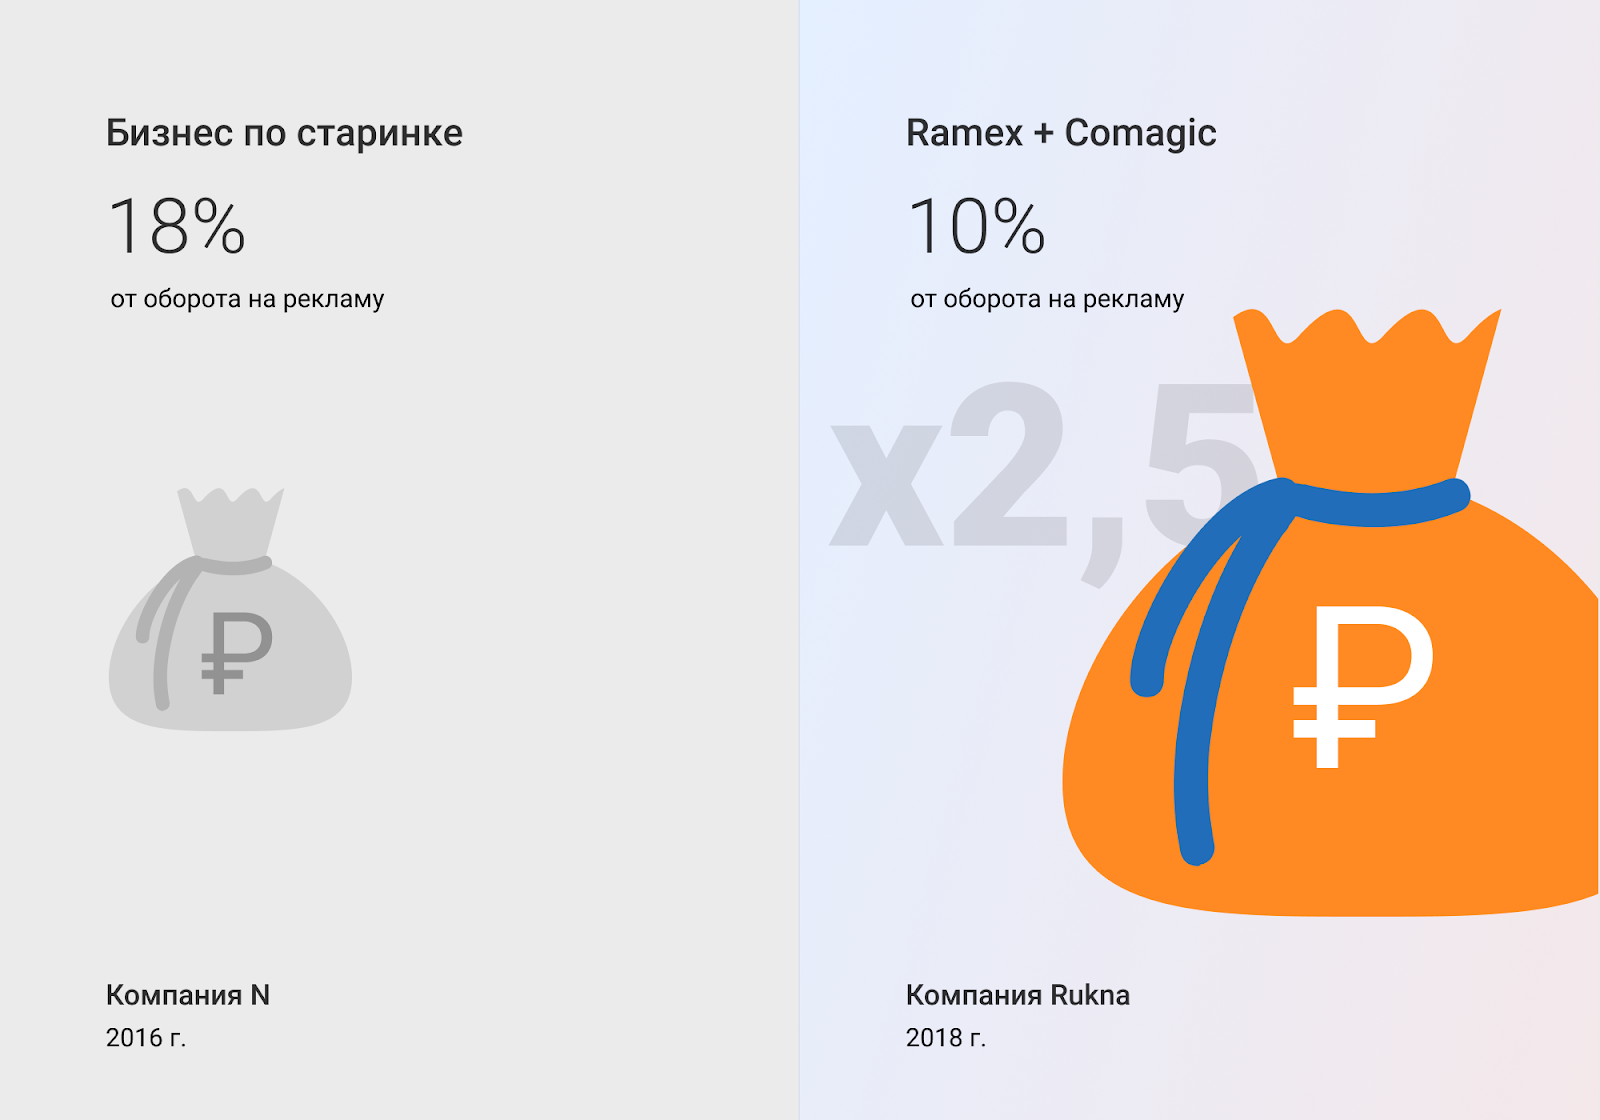 Ramex и Comagic. Как интеграция помогла увеличить рентабельность бизнеса в 4 раза